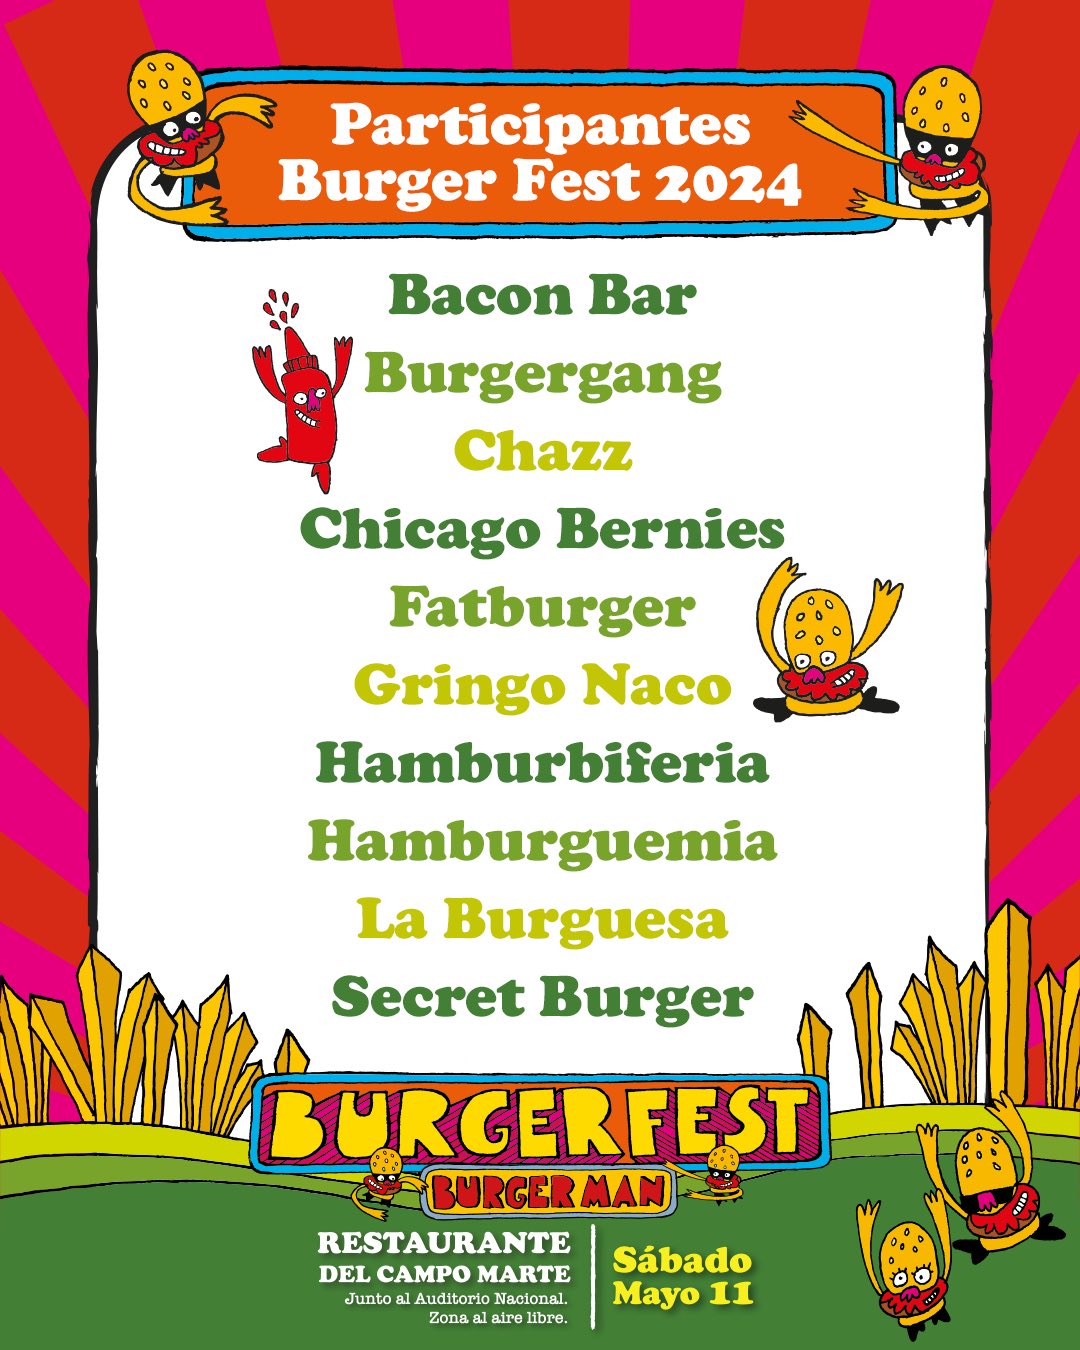 Burger Fest 2024 tendrá más de 30 restaurantes presentes 5